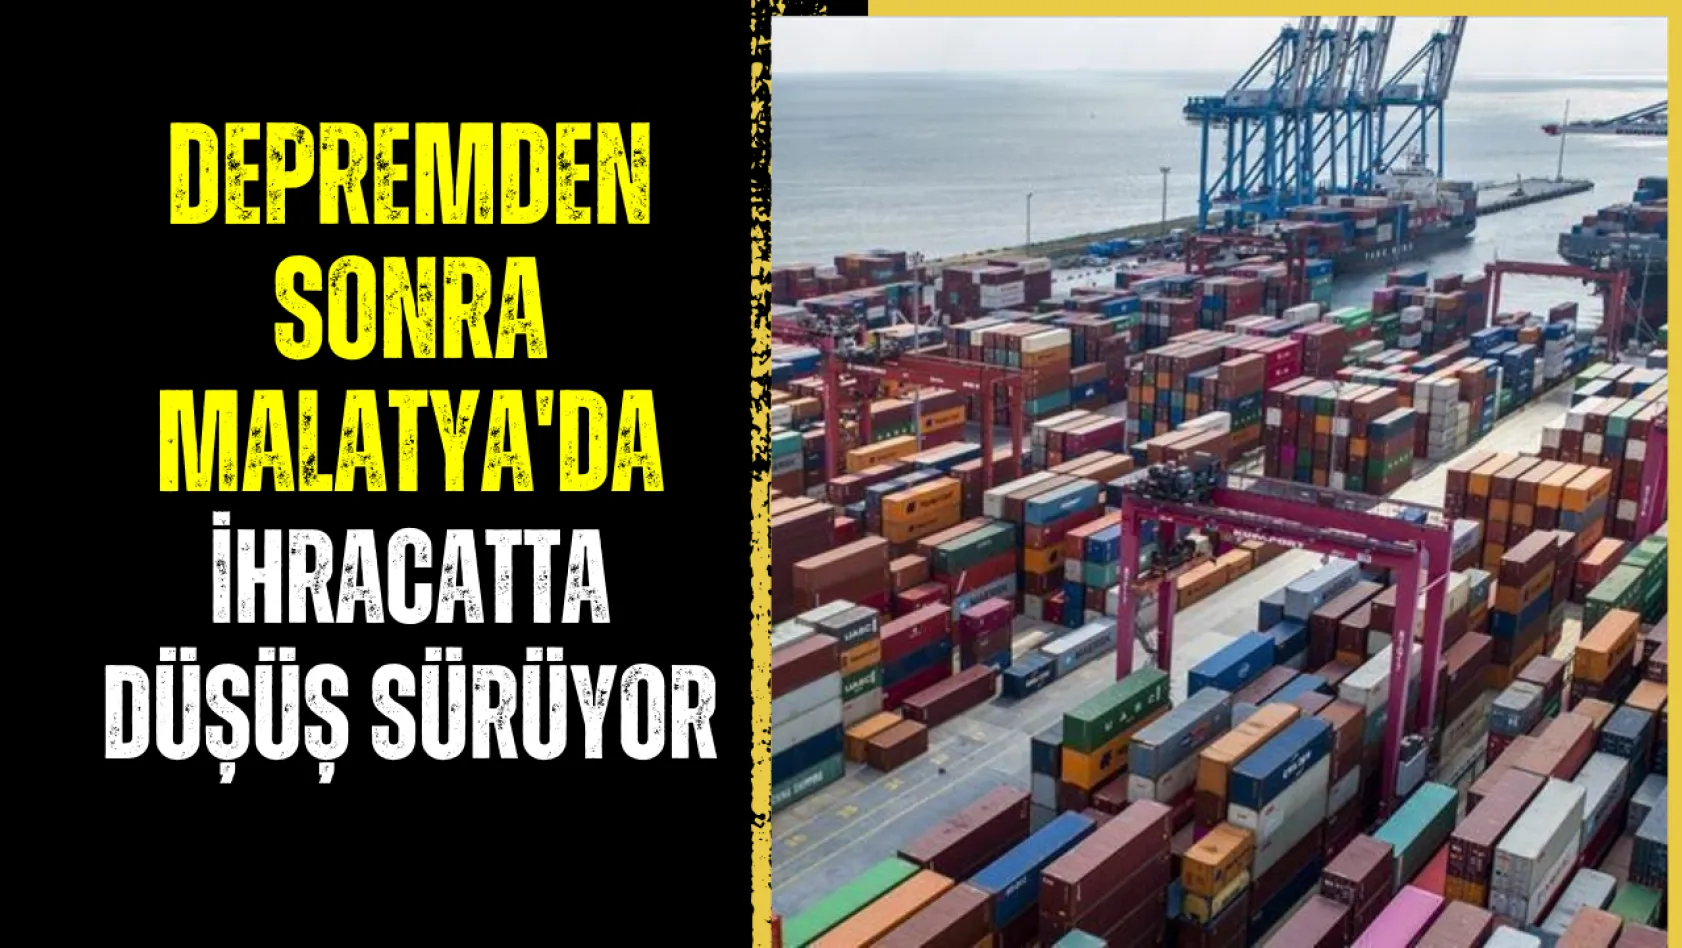 Depremden sonra Malatya'da ihracatta düşüş sürüyor